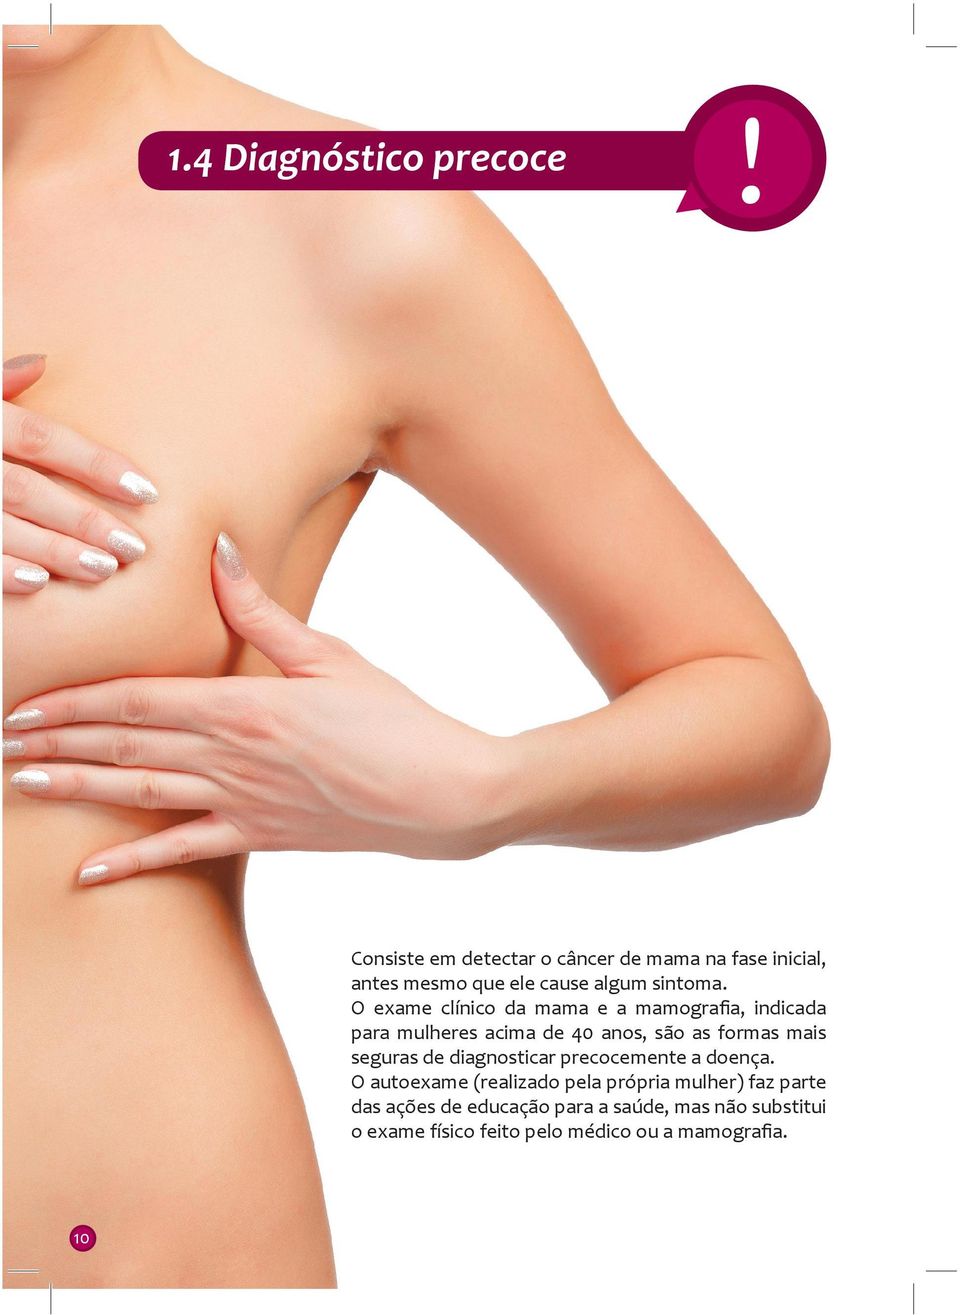 O exame clínico da mama e a mamografia, indicada para mulheres acima de 40 anos, são as formas mais